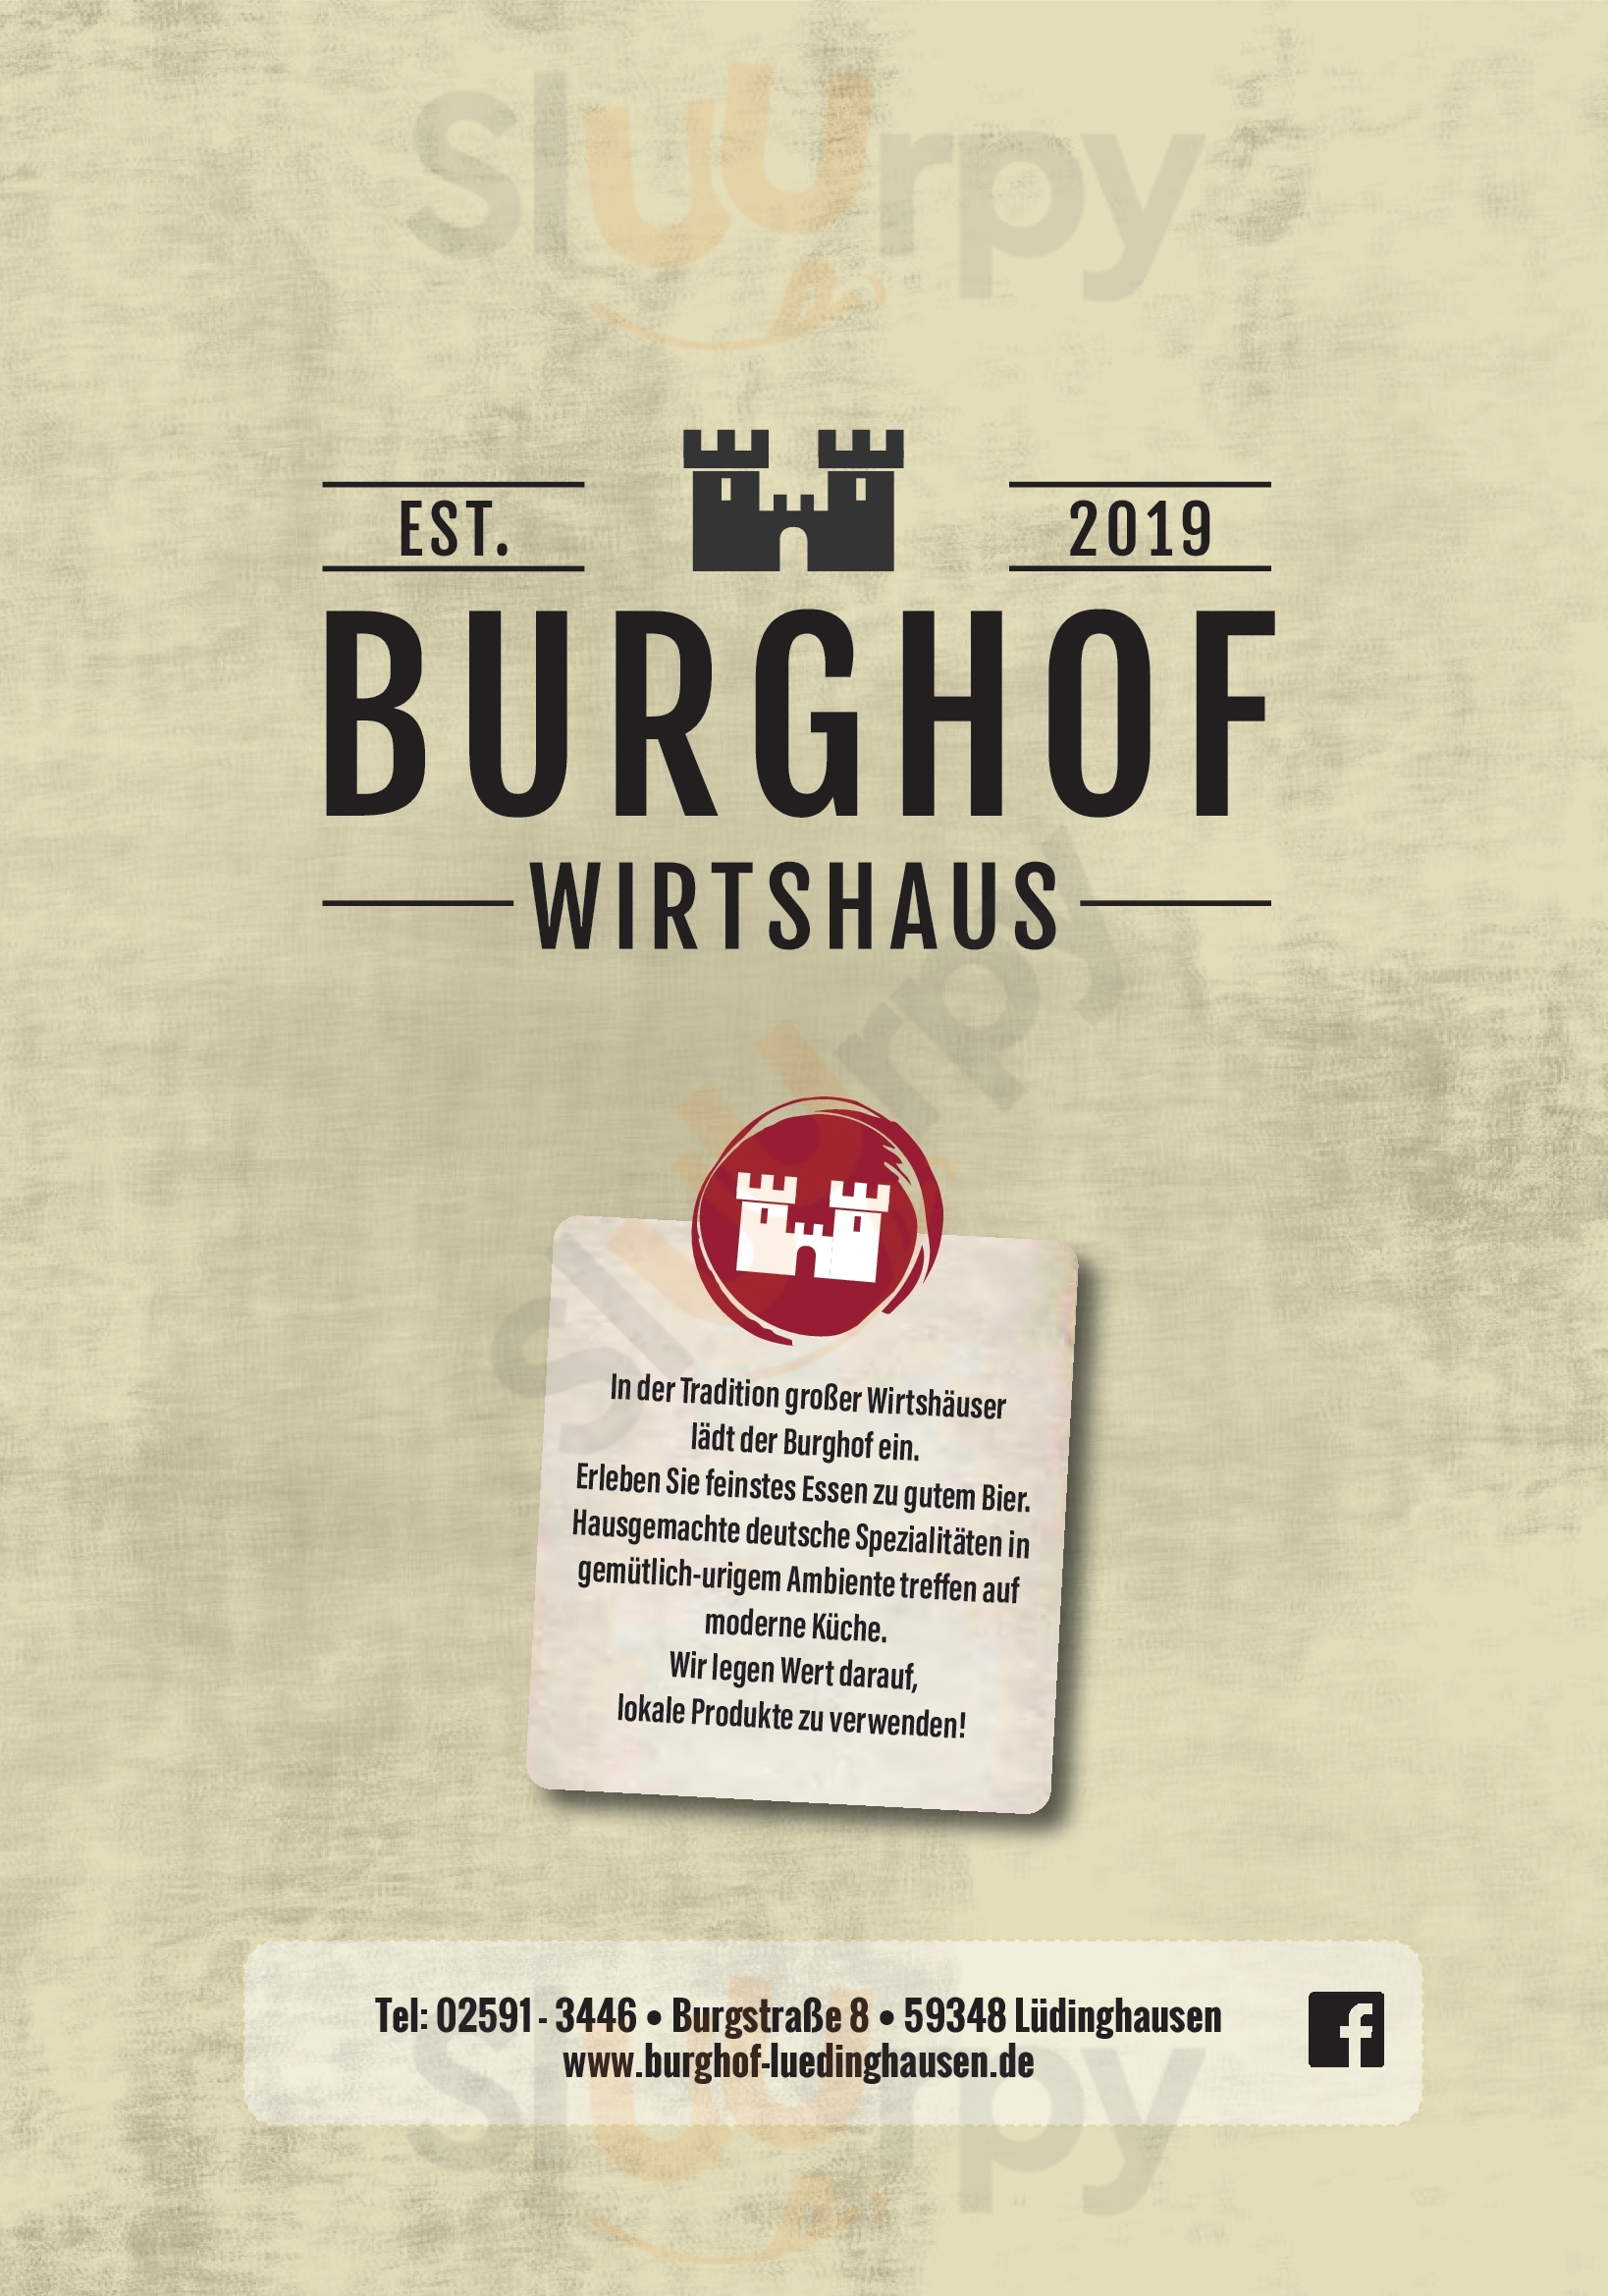 Wirtshaus Burghof Lüdinghausen Menu - 1